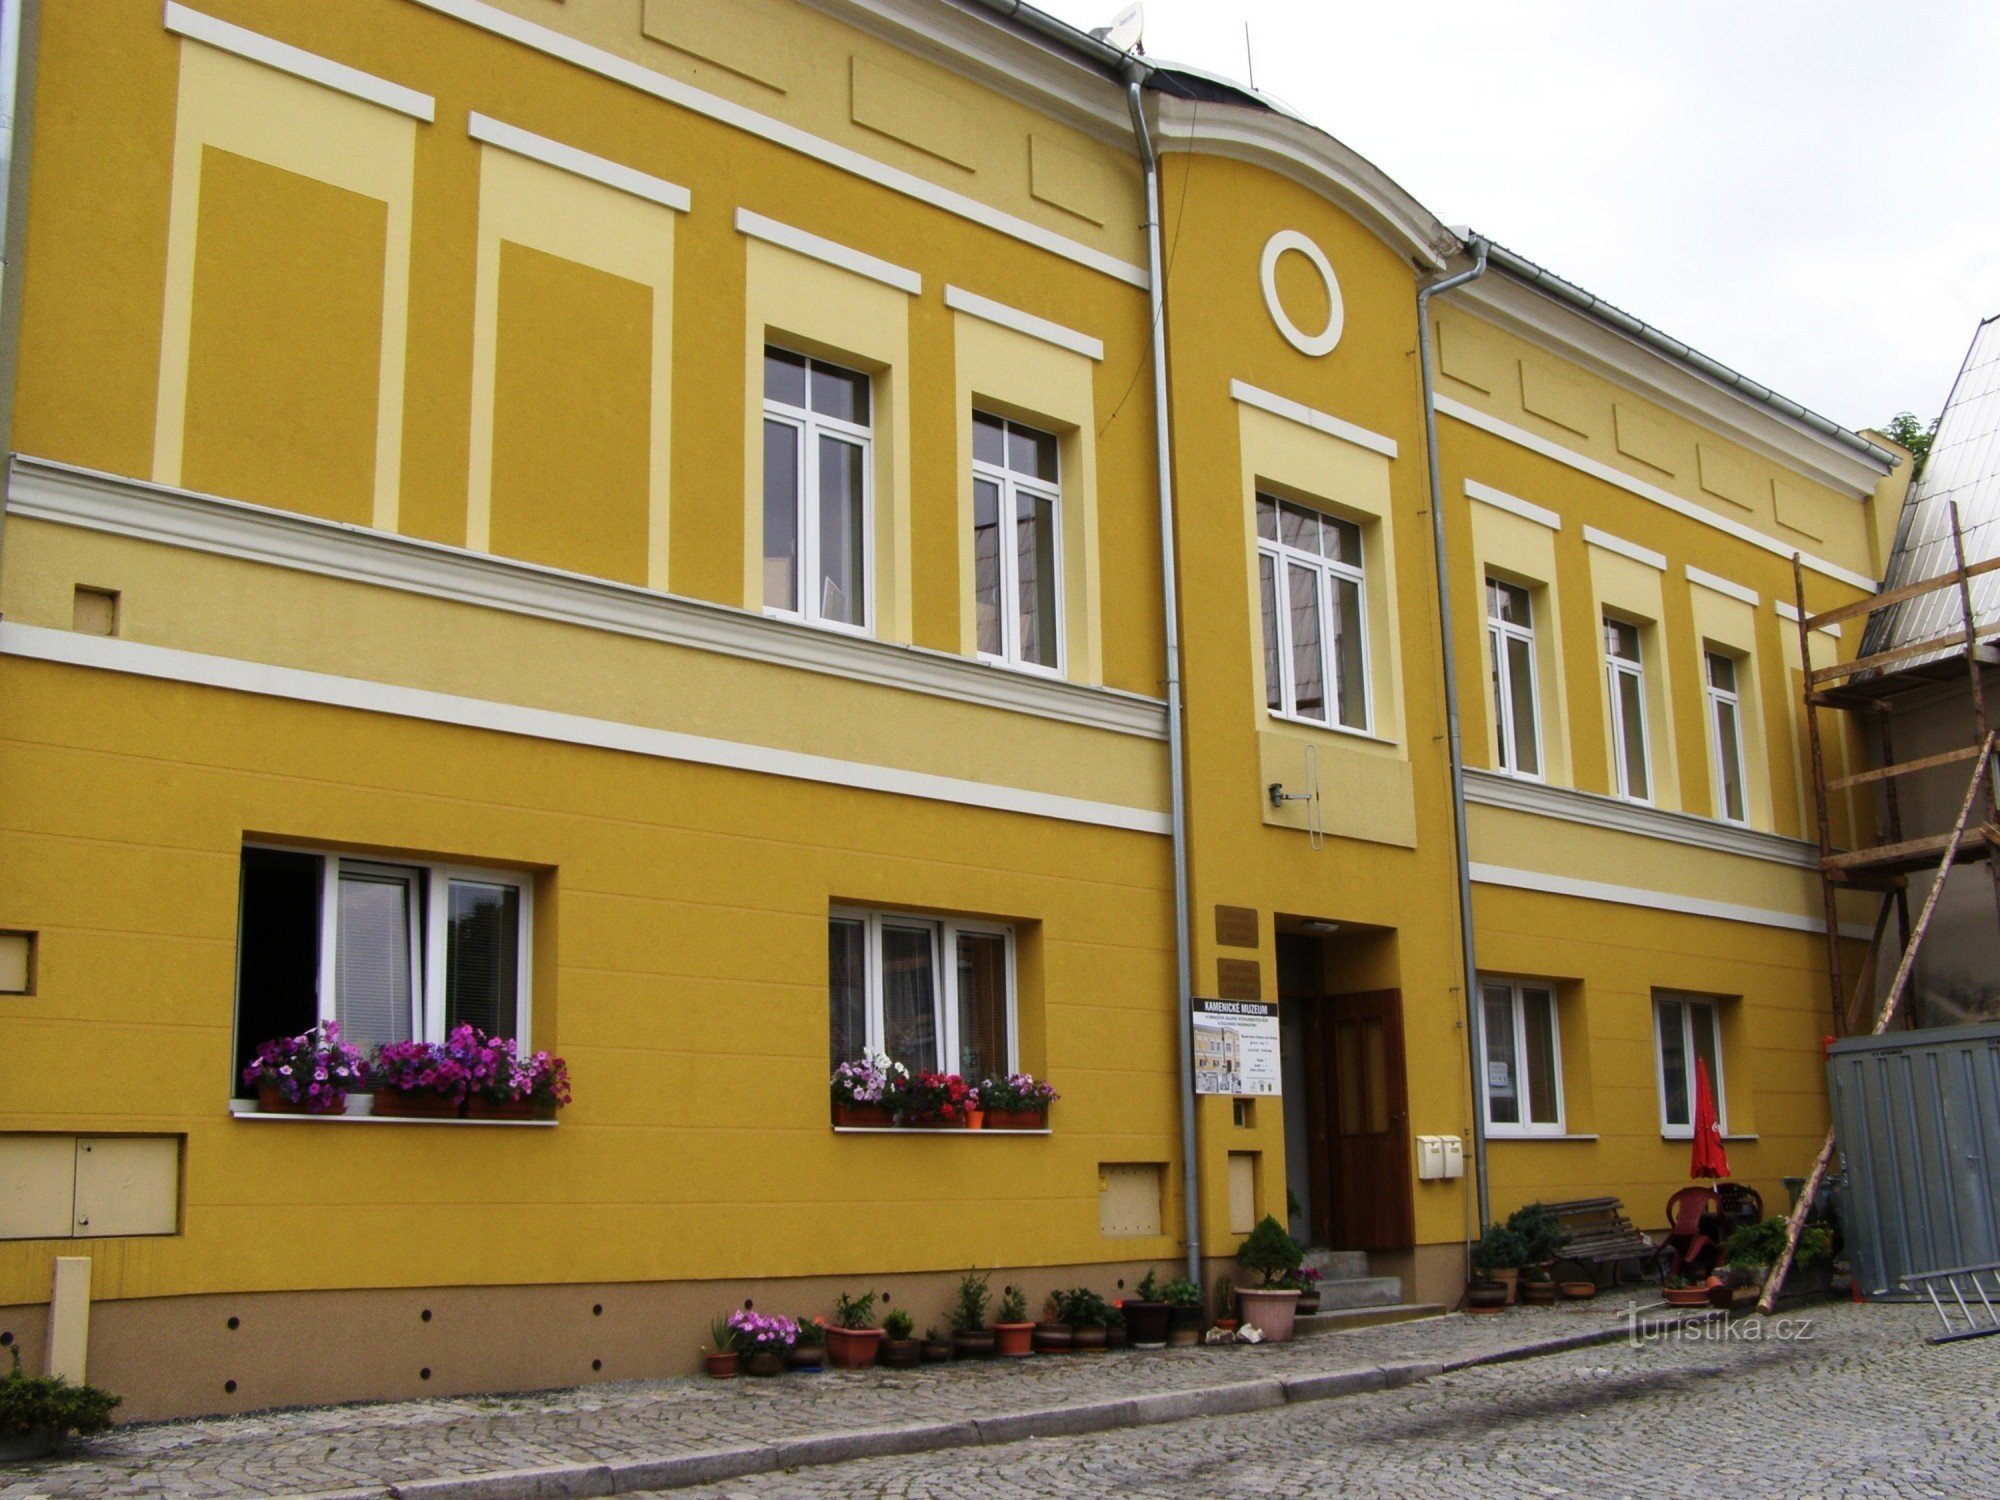 Žulová - bảo tàng Kamenické, trung tâm thông tin du lịch, thư viện